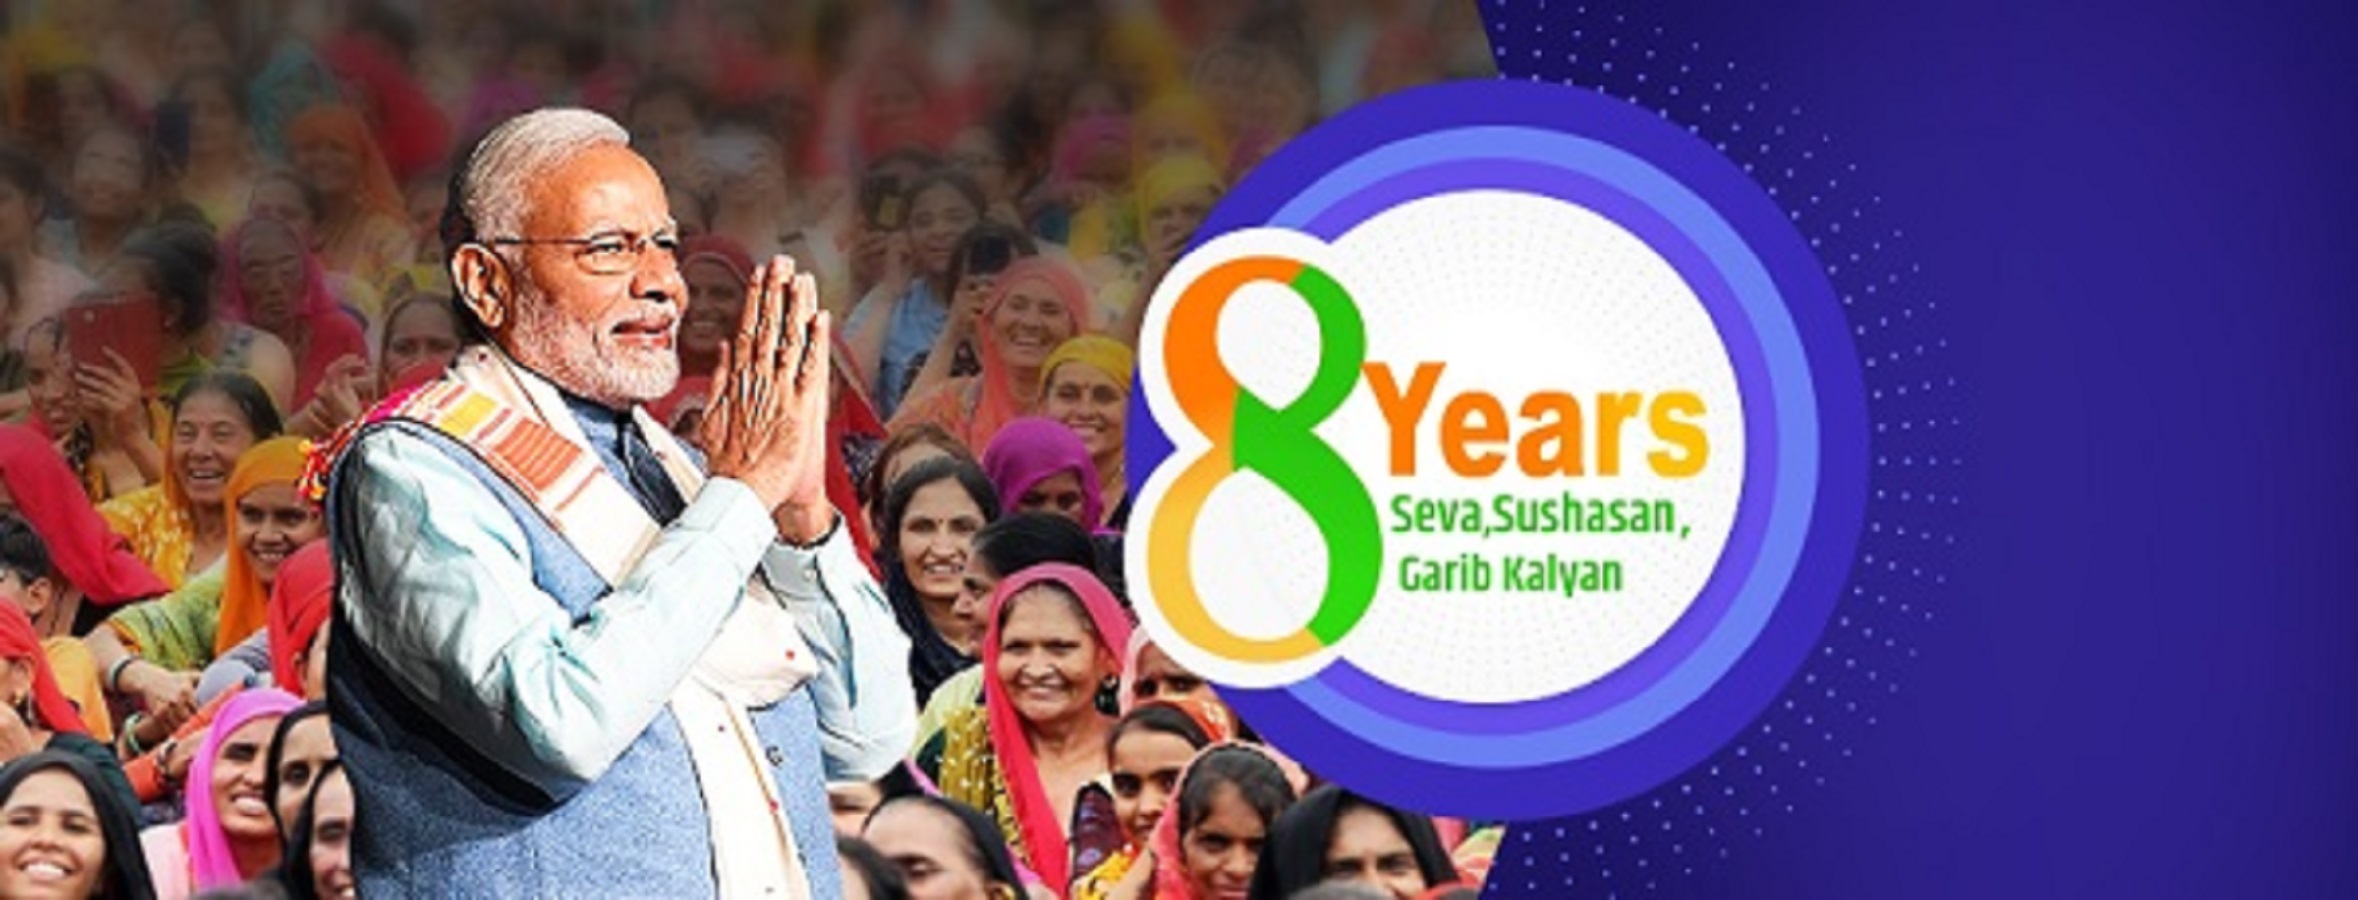 प्रधानमंत्री ने साझा किए 8 साल:सेवा, सुशासन और गरीब कल्याण- 'सेवा के 8 साल-भारत की विकास यात्रा, कई क्षेत्रों की झलकियां